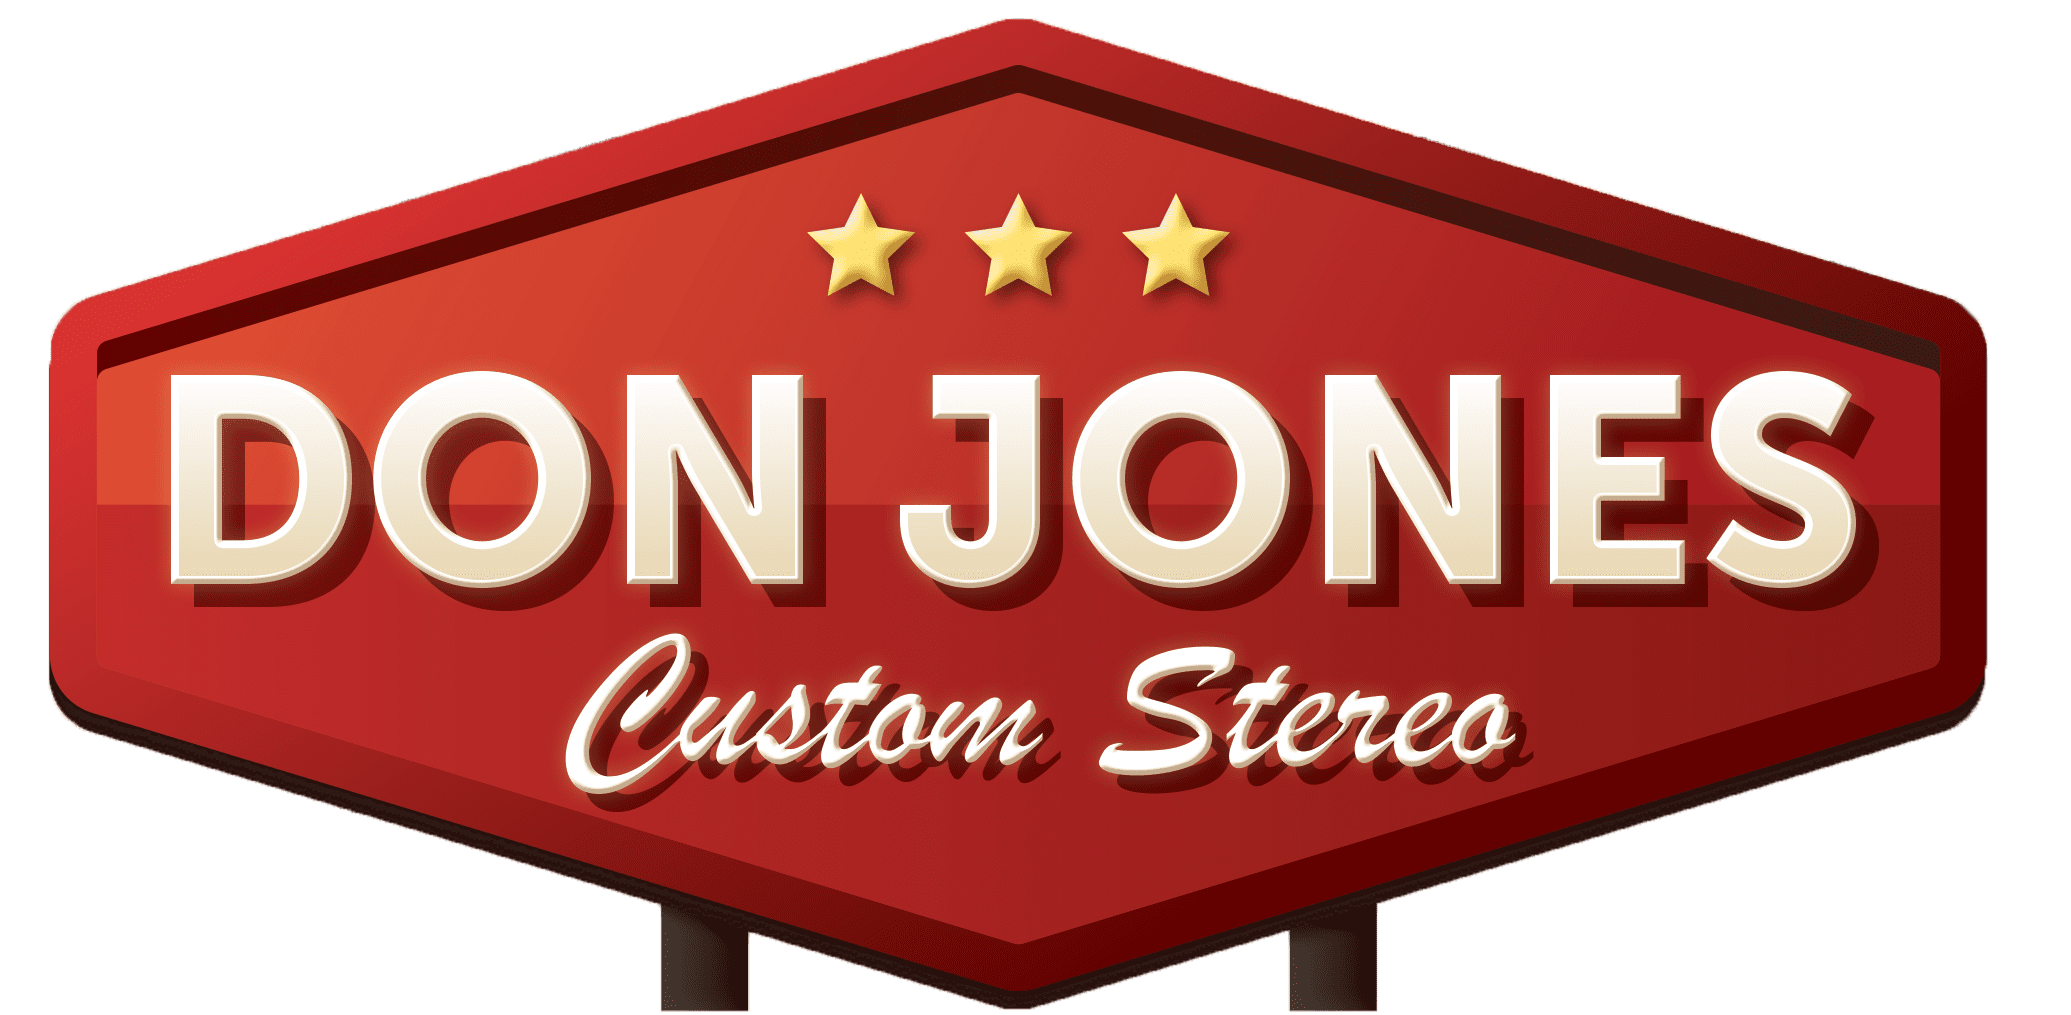 Don Jones Custom Stereo